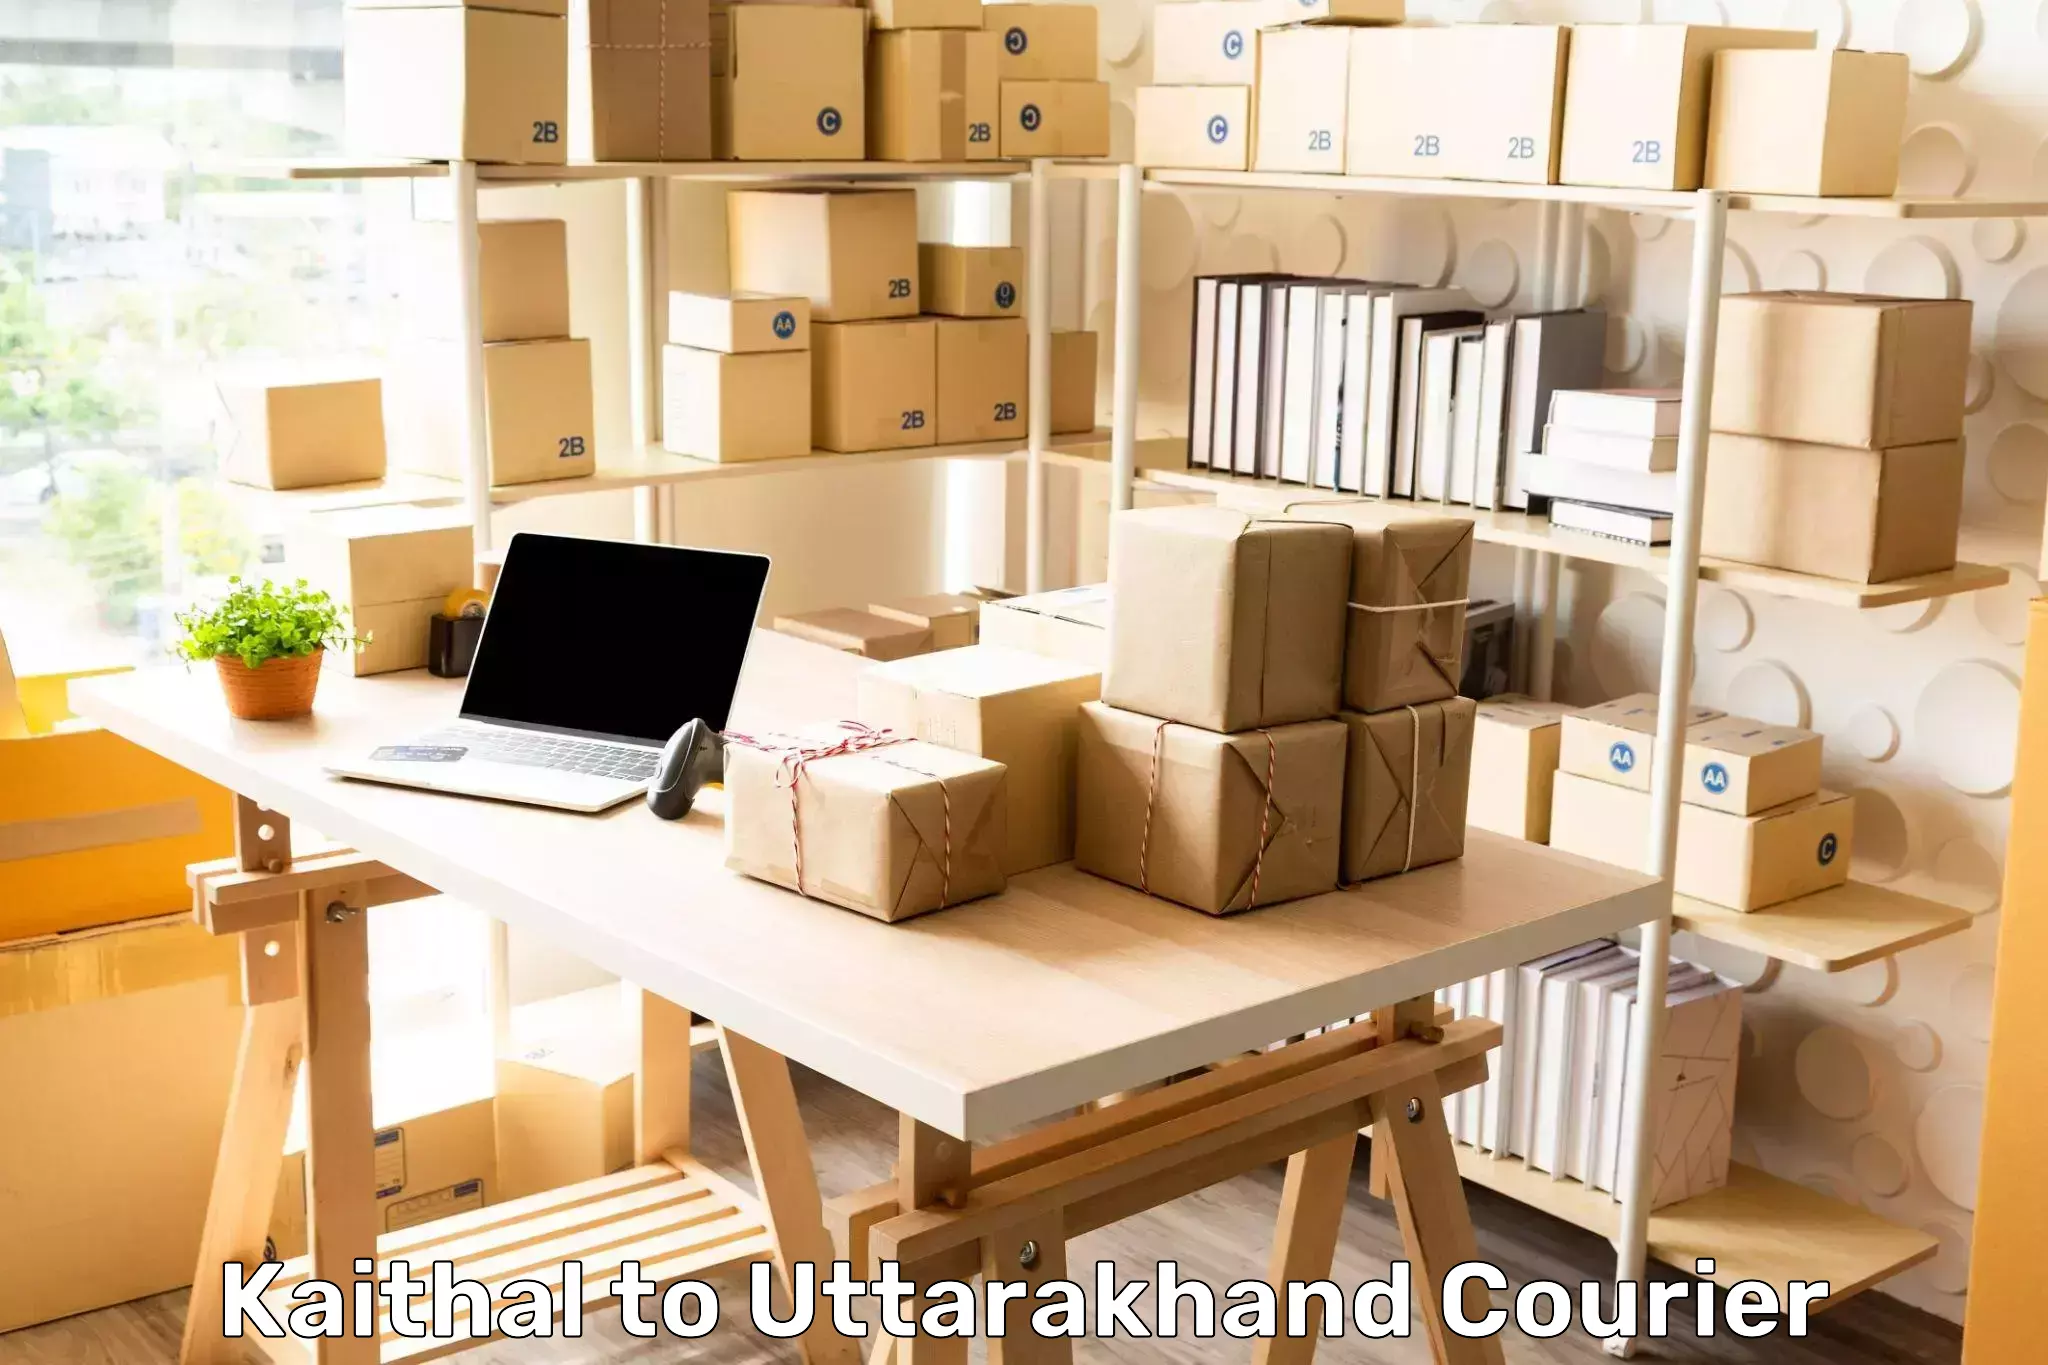 Customer-focused courier Kaithal to Uttarakhand